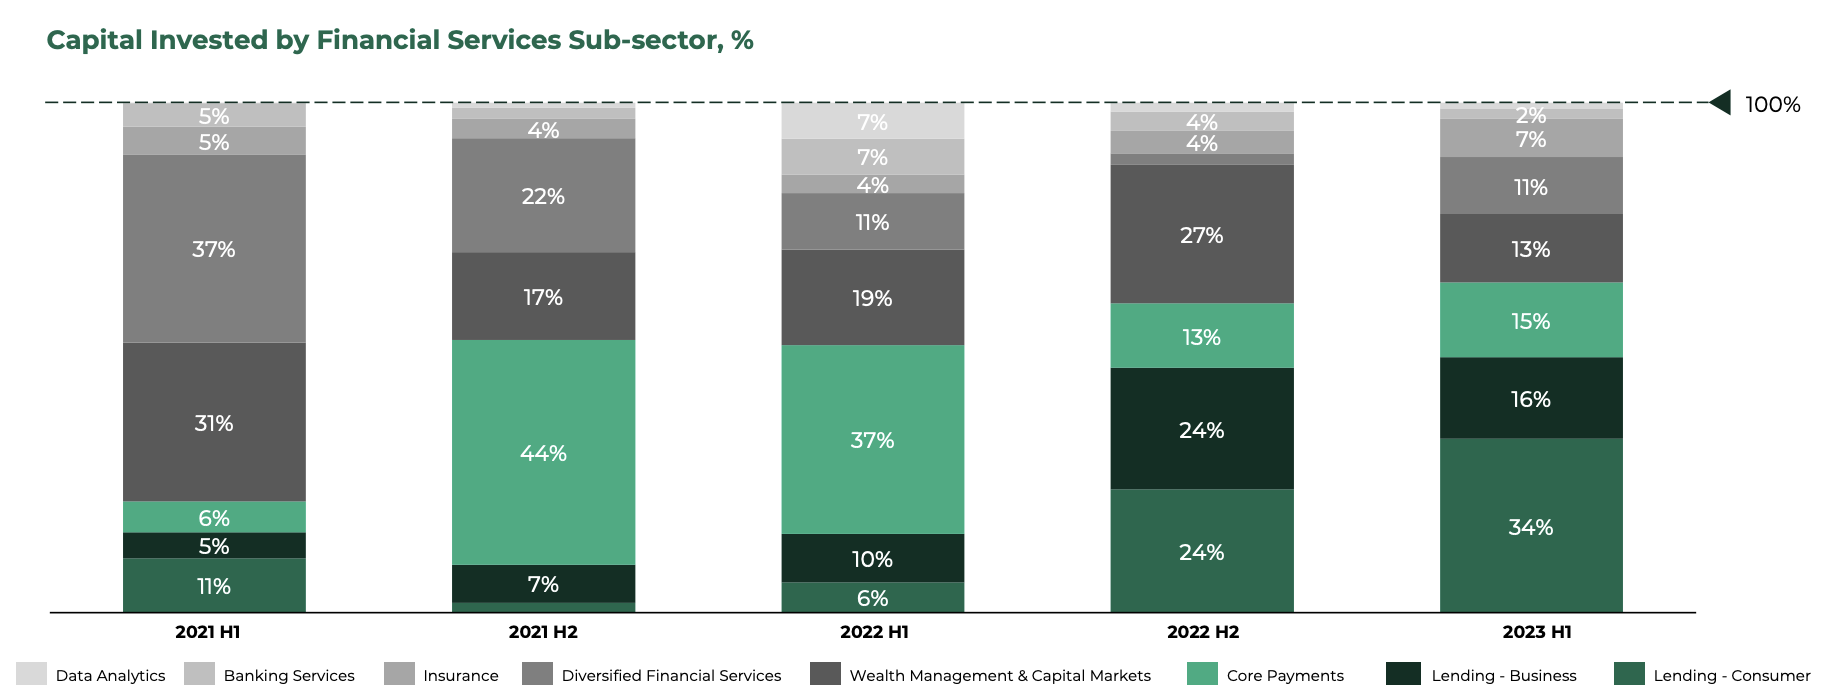 Capital investido pelo subsetor de serviços financeiros, %, Fonte: Southeast Asia Tech Investment 2023 H1, Cento Ventures, dezembro de 2023